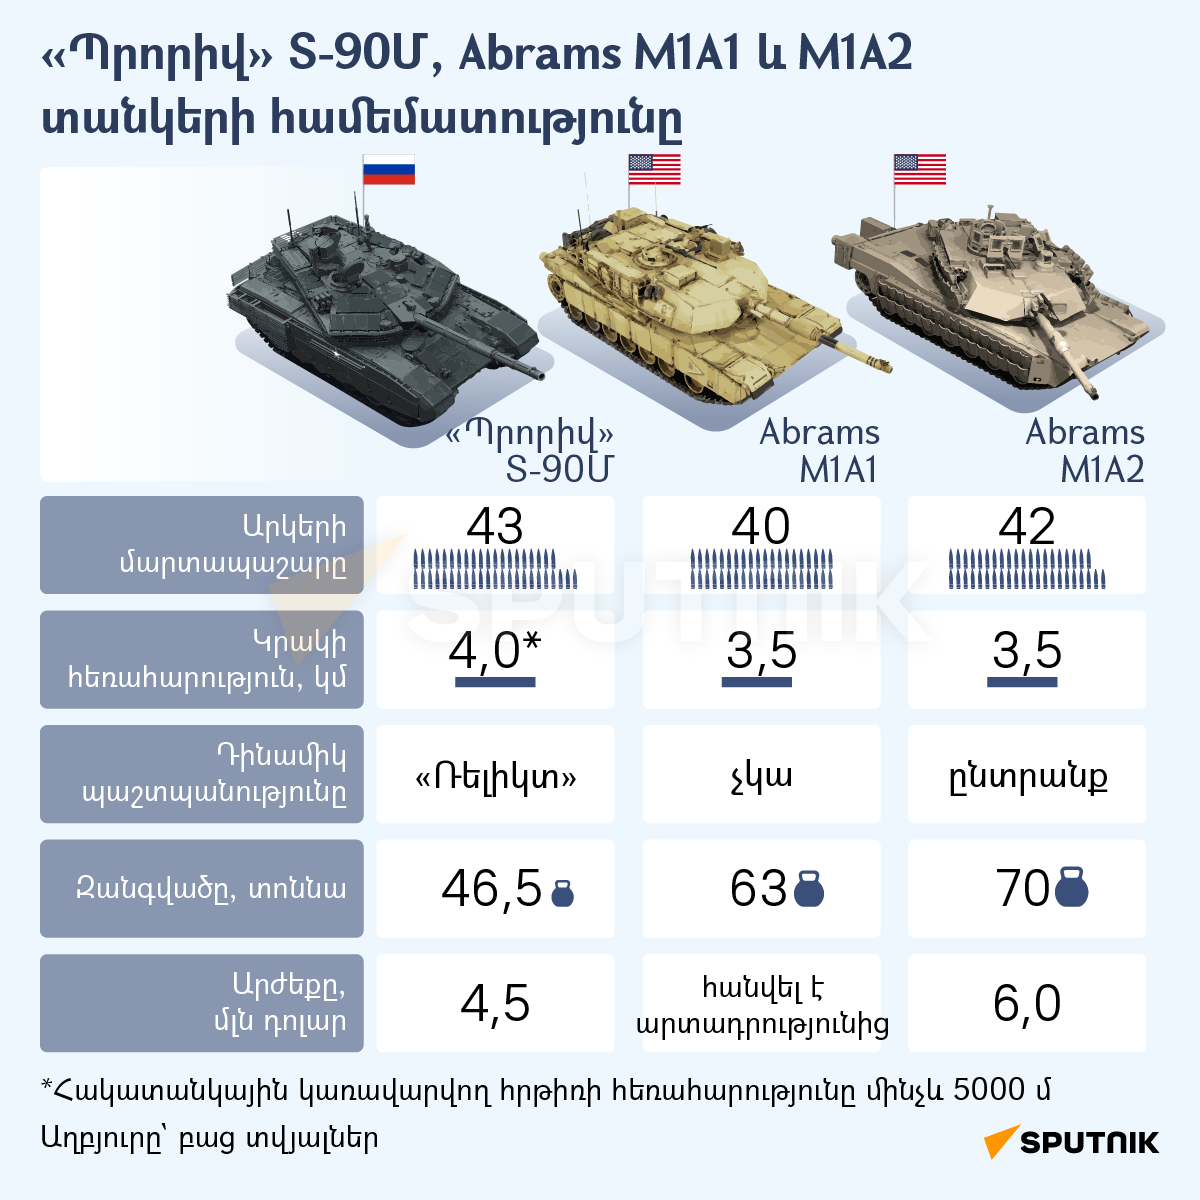 Պրորիվ Տ-90Մ, Abrams M1A1 և M1A2 տանկերի համեմատությունը - Sputnik Արմենիա